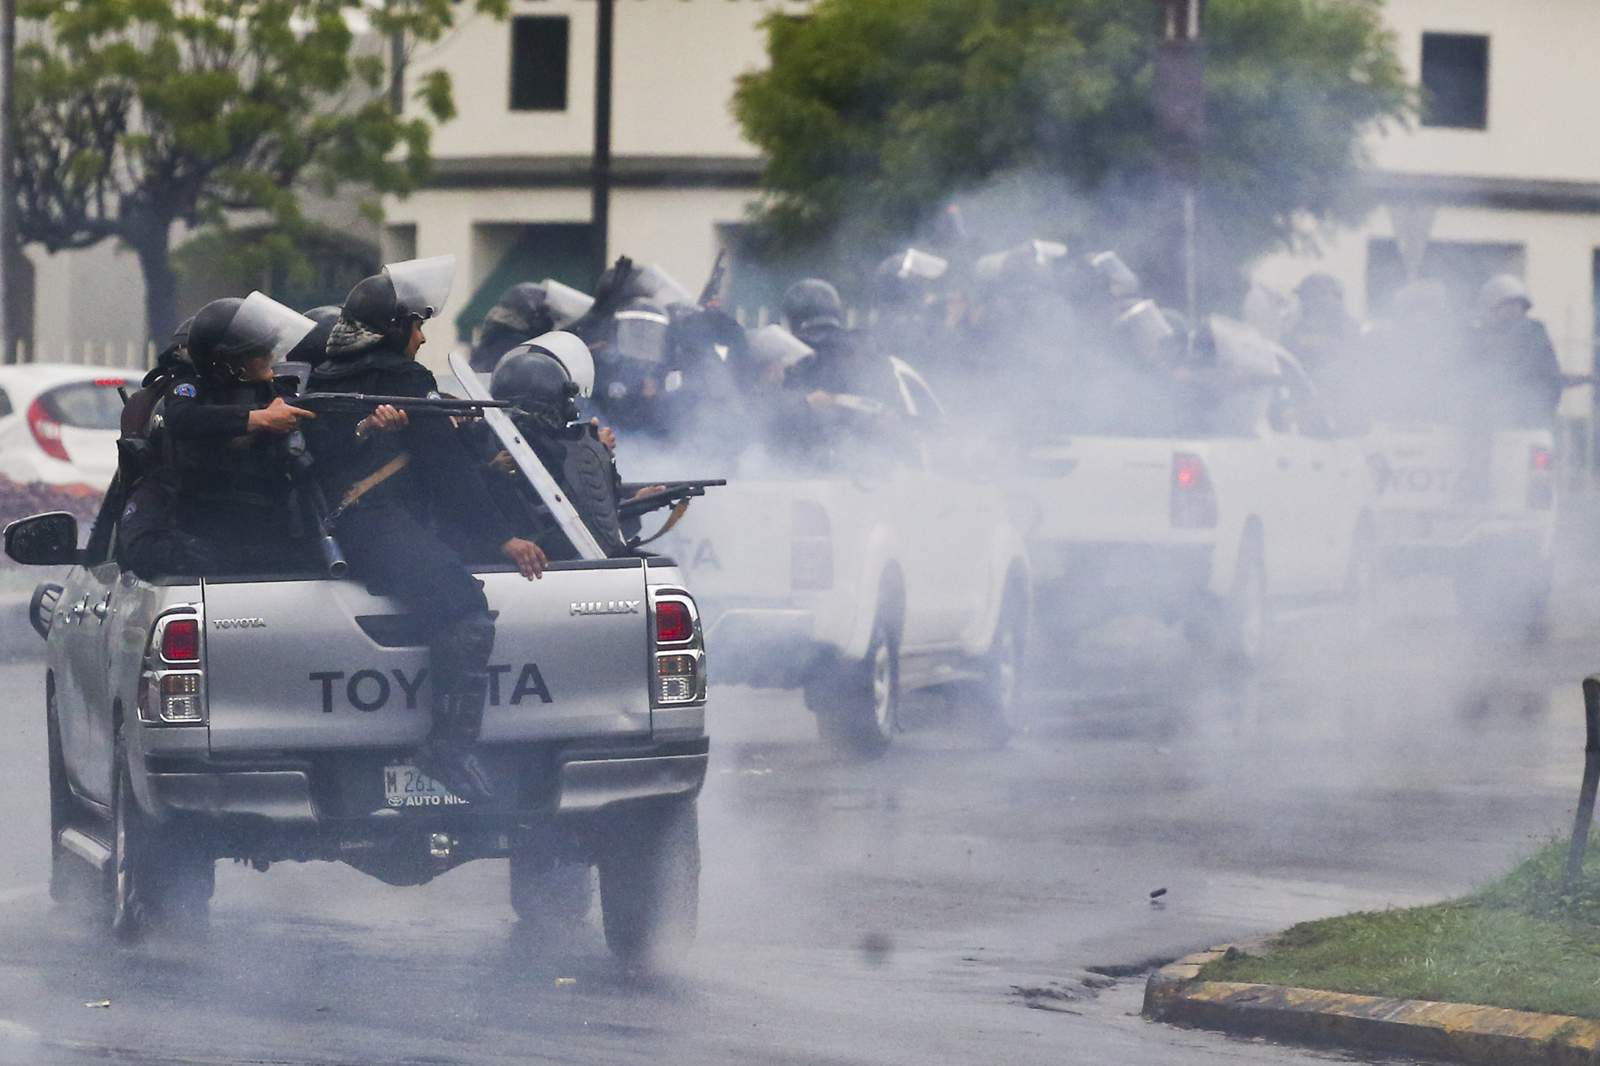 EEUU cuestiona “represión” en Nicaragua y pide cambiar rumbo